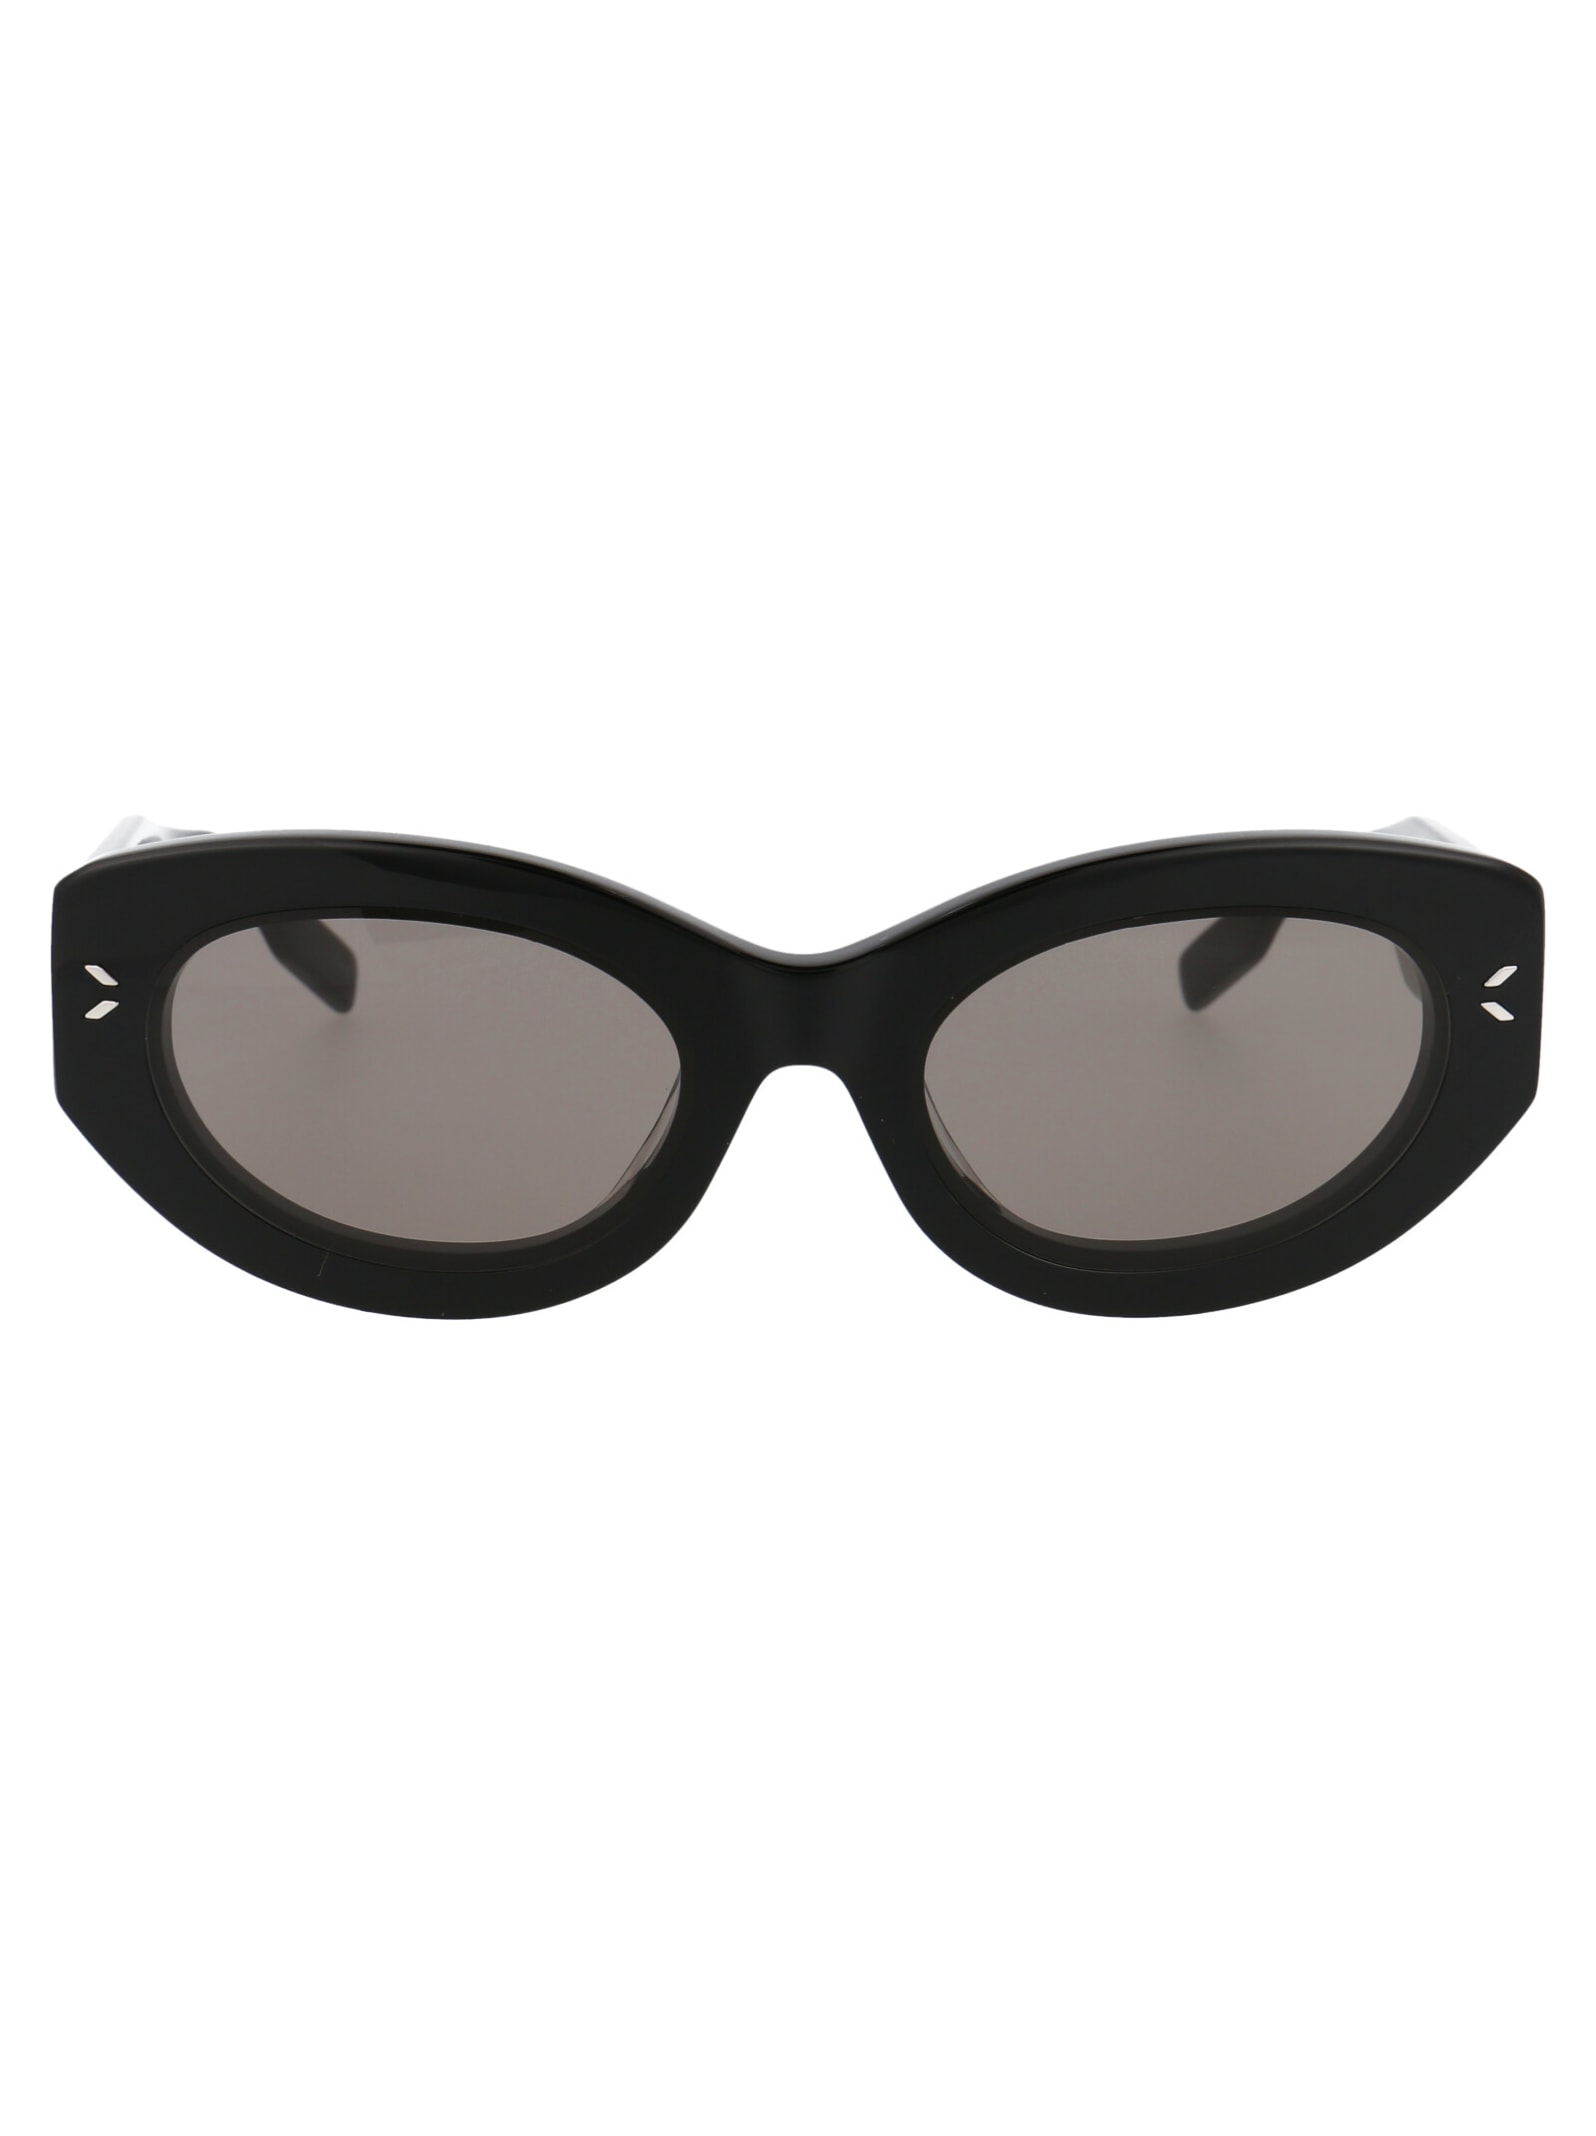 McQ Alexander McQueen Mq0324s Sunglasses